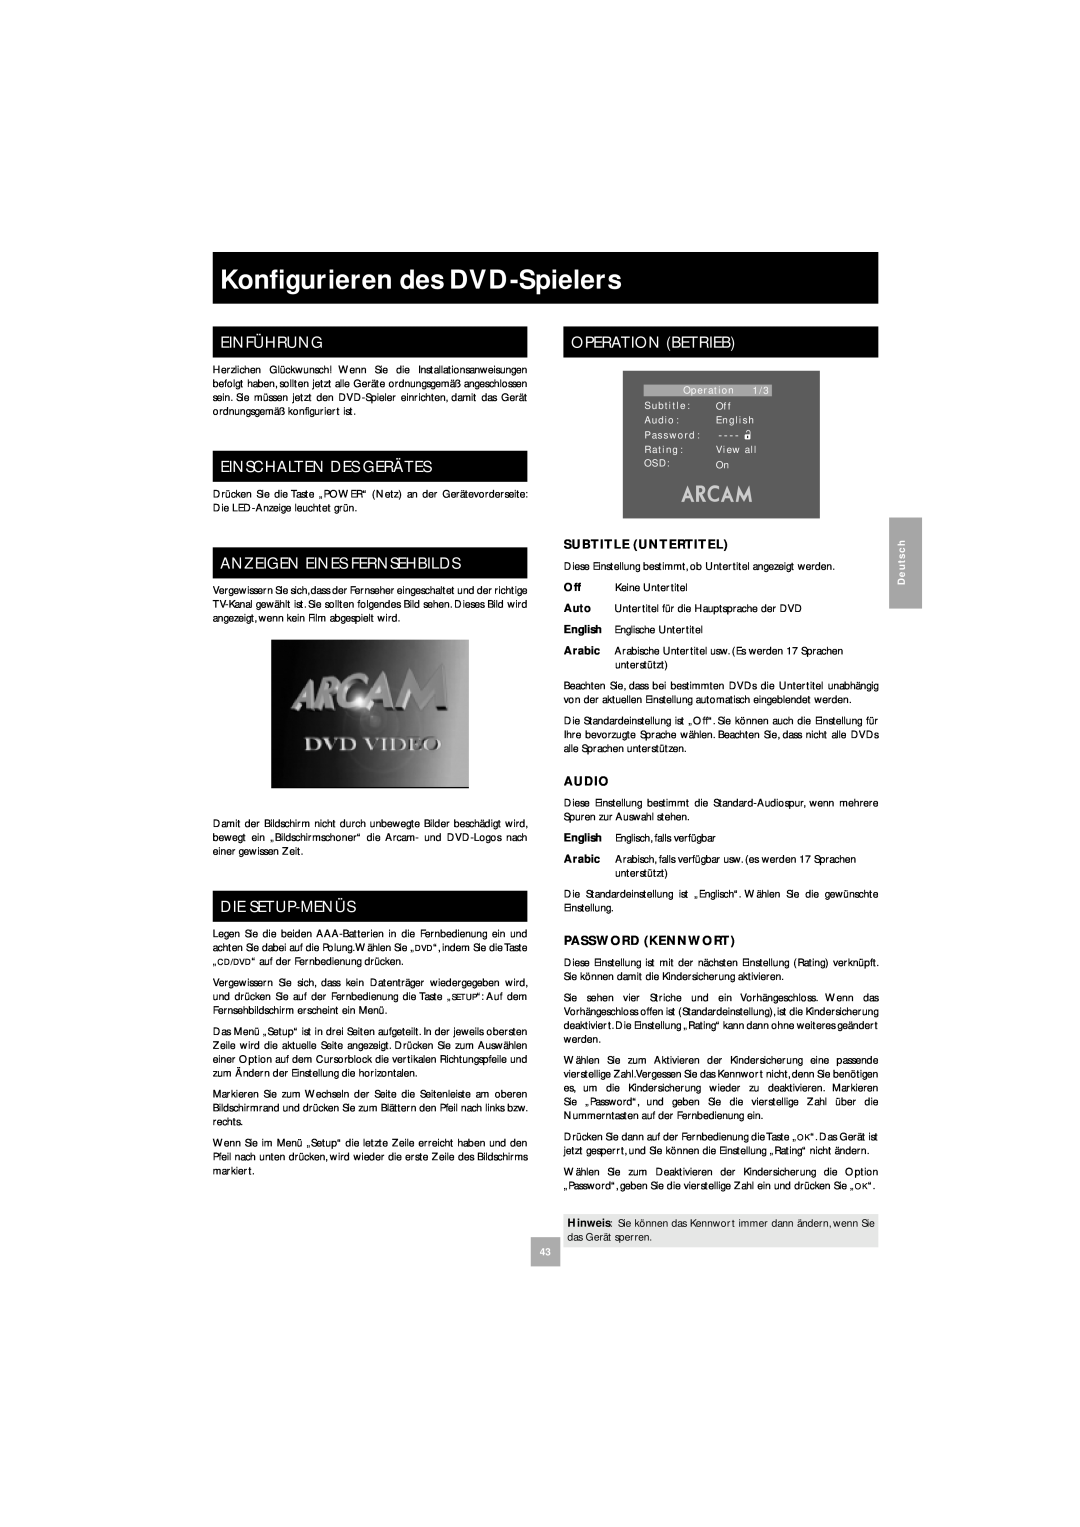 Arcam DV27 manual Konﬁgurieren des DVD-Spielers, Einführung, Einschalten Des Gerätes, Anzeigen Eines Fernsehbilds 